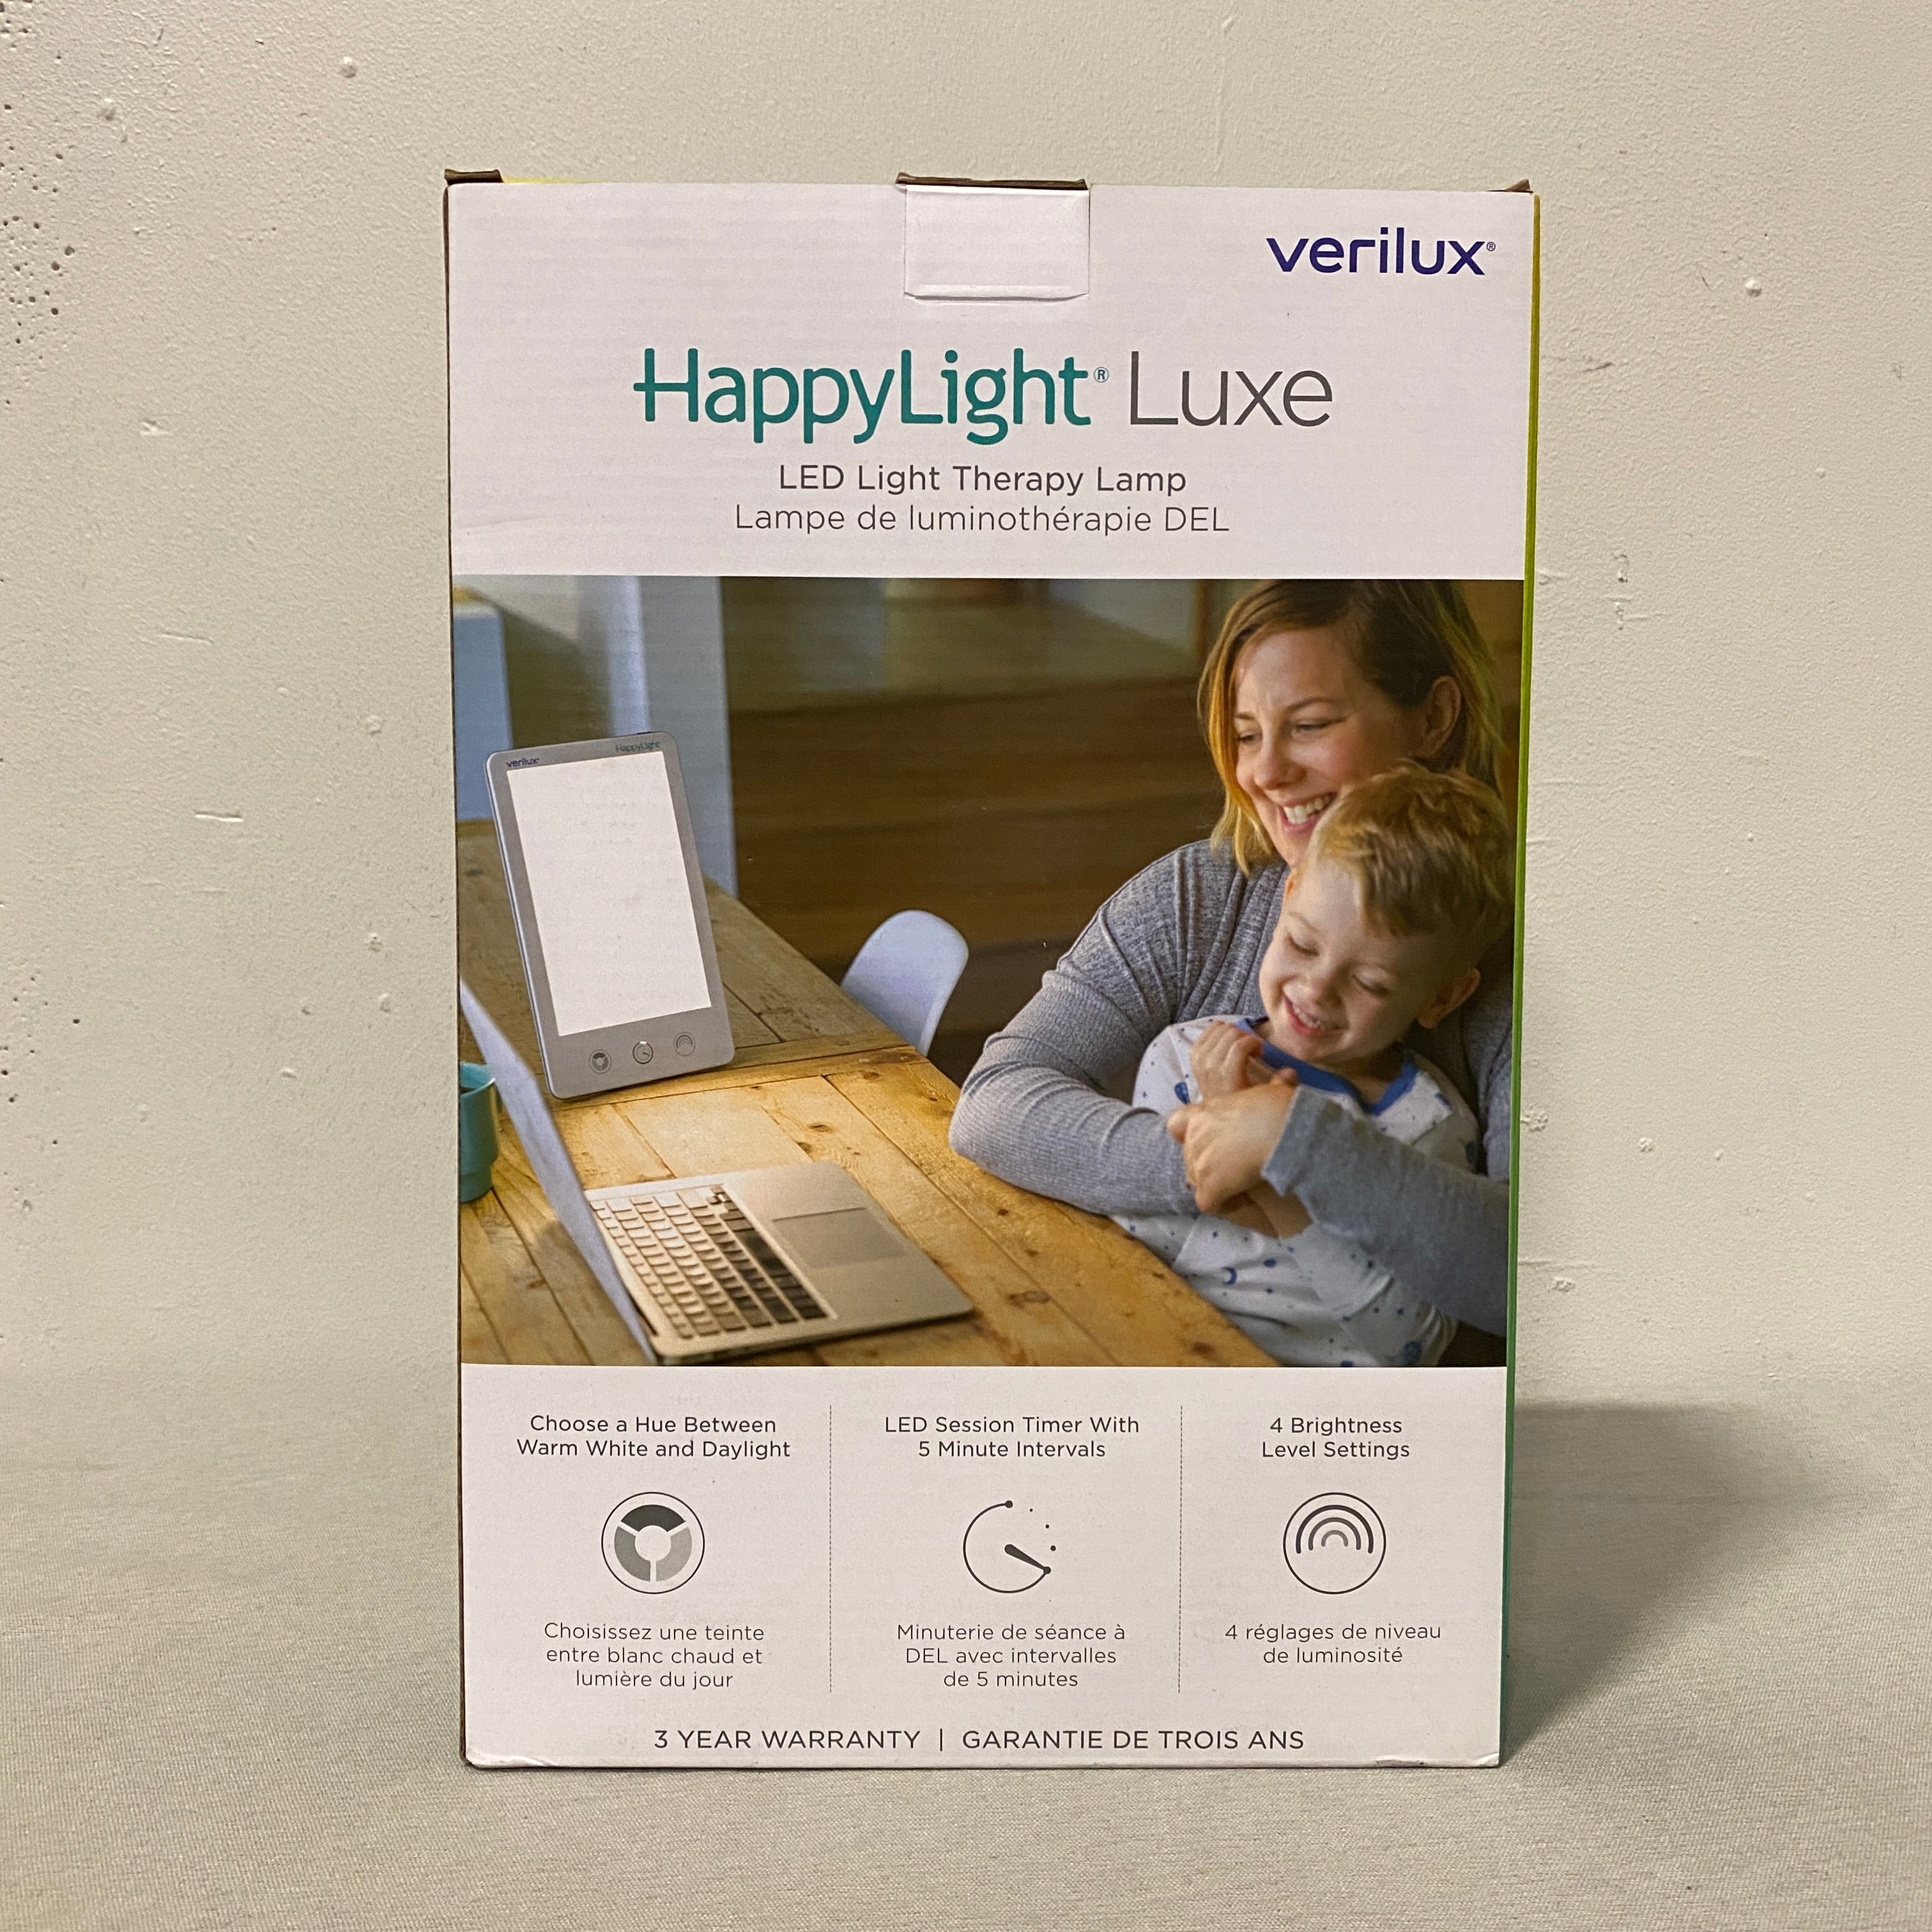 Verilux lampe de luminothérapie DEL HappyLight Luxe